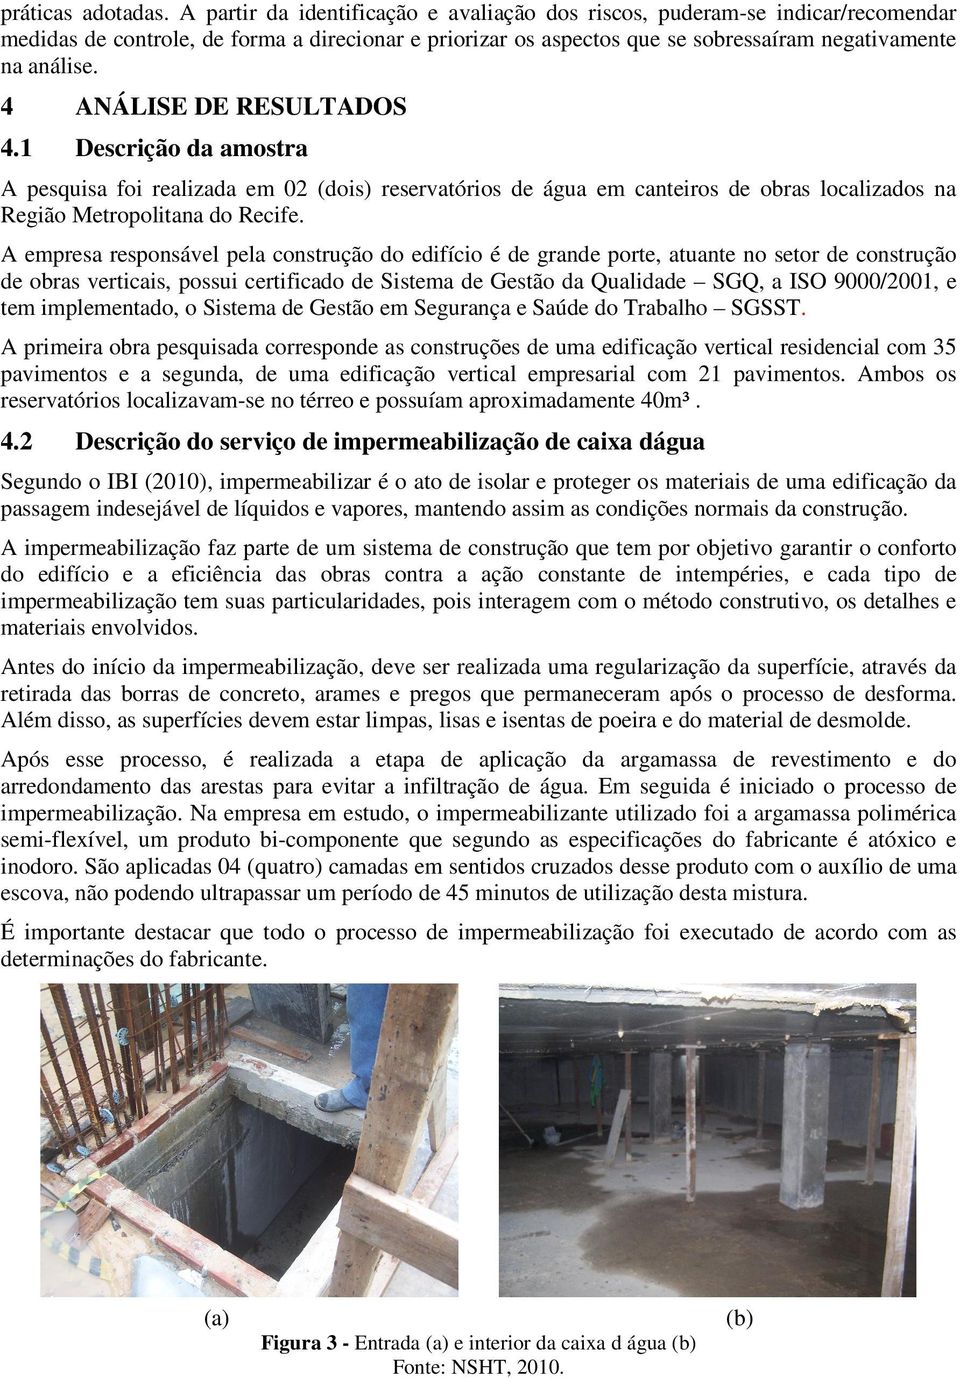 4 ANÁLISE DE RESULTADOS 4.1 Descrição da amostra A pesquisa foi realizada em 02 (dois) reservatórios de água em canteiros de obras localizados na Região Metropolitana do Recife.